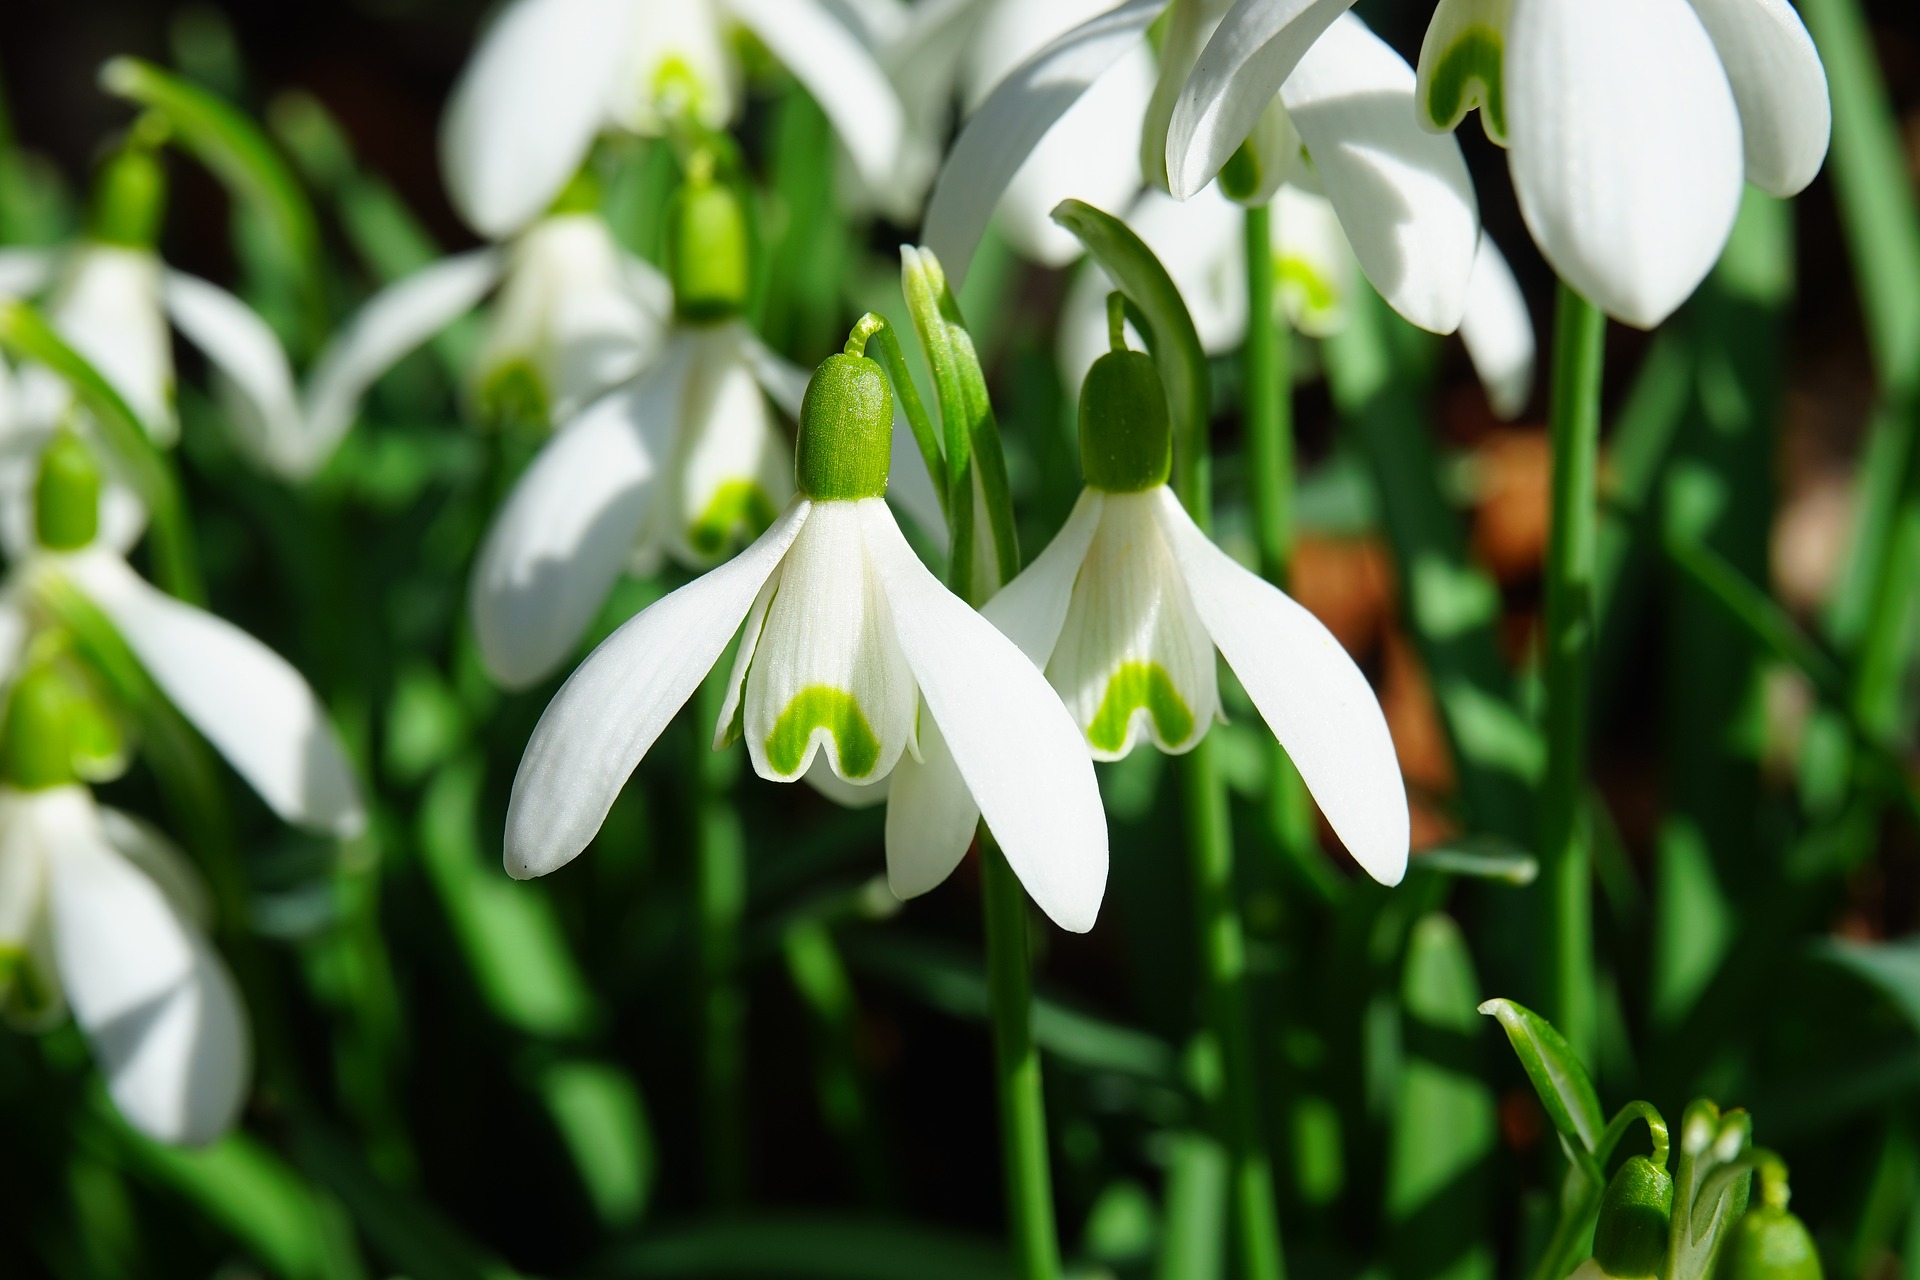 To ujęcie przedstawia piękny biały krokus śnieżny (Galanthus nivalis), który jest jednym z najwcześniej kwitnących kwiatów wiosennych. Jego białe, delikatne kwiaty z charakterystycznymi zielonymi plamkami na płatkach ukazują się już na przełomie lutego i marca, dodając ogrodowi niezwykłego uroku. Krokus śnieżny to roślina o subtelnej urodzie, która doskonale prezentuje się wśród traw, na rabatach kwiatowych i pod drzewami. To idealny wybór dla miłośników prostoty i naturalnego piękna w ogrodzie